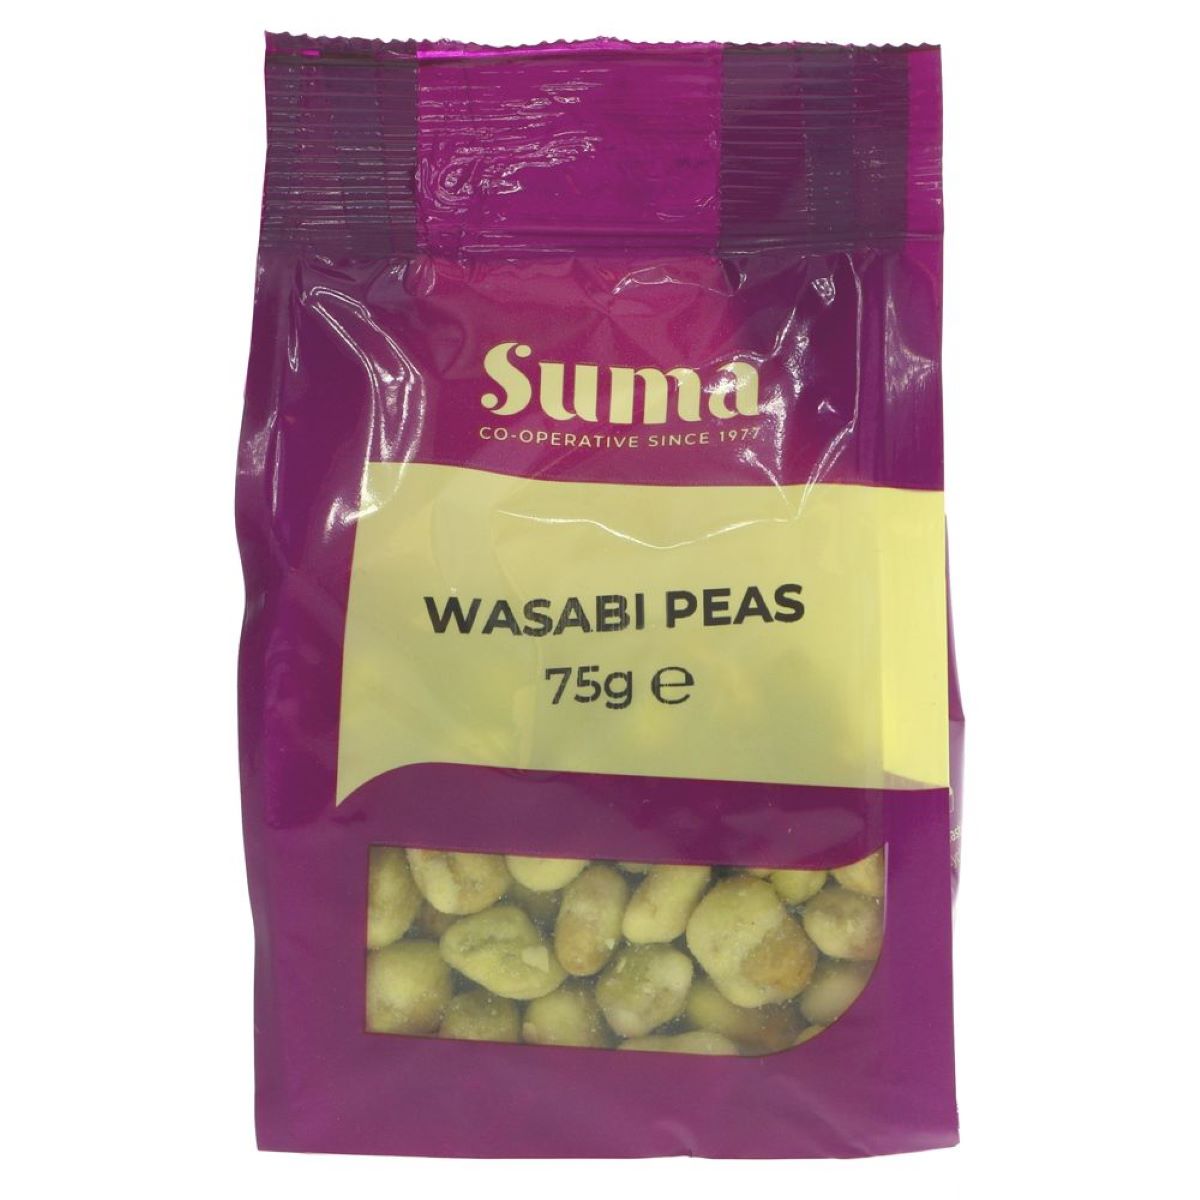 Suma Wasabi Peas 75g